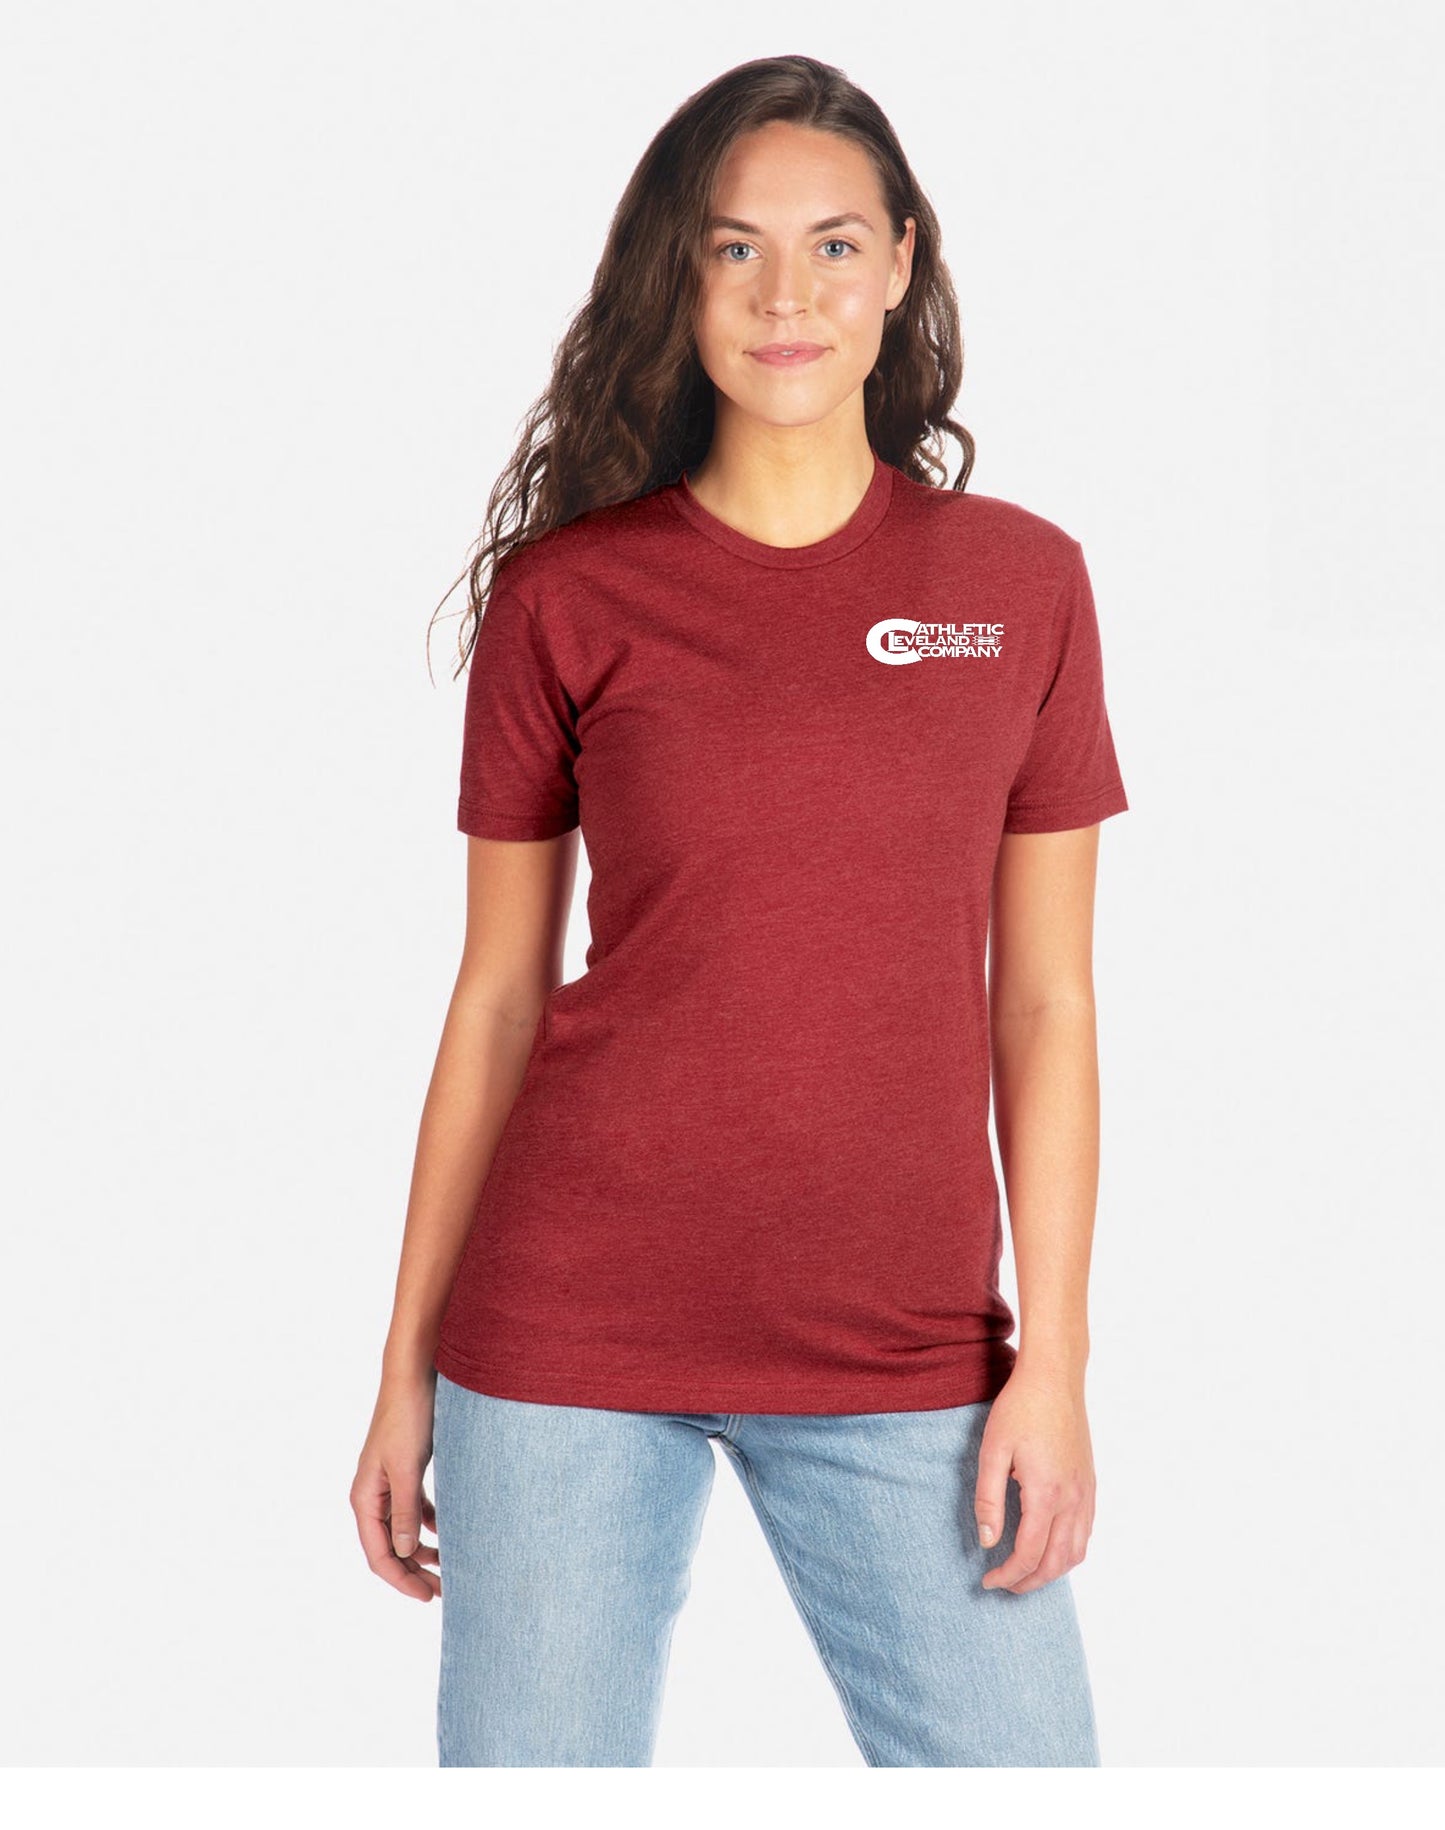 Women’s Edgewater Sailboat T shirt